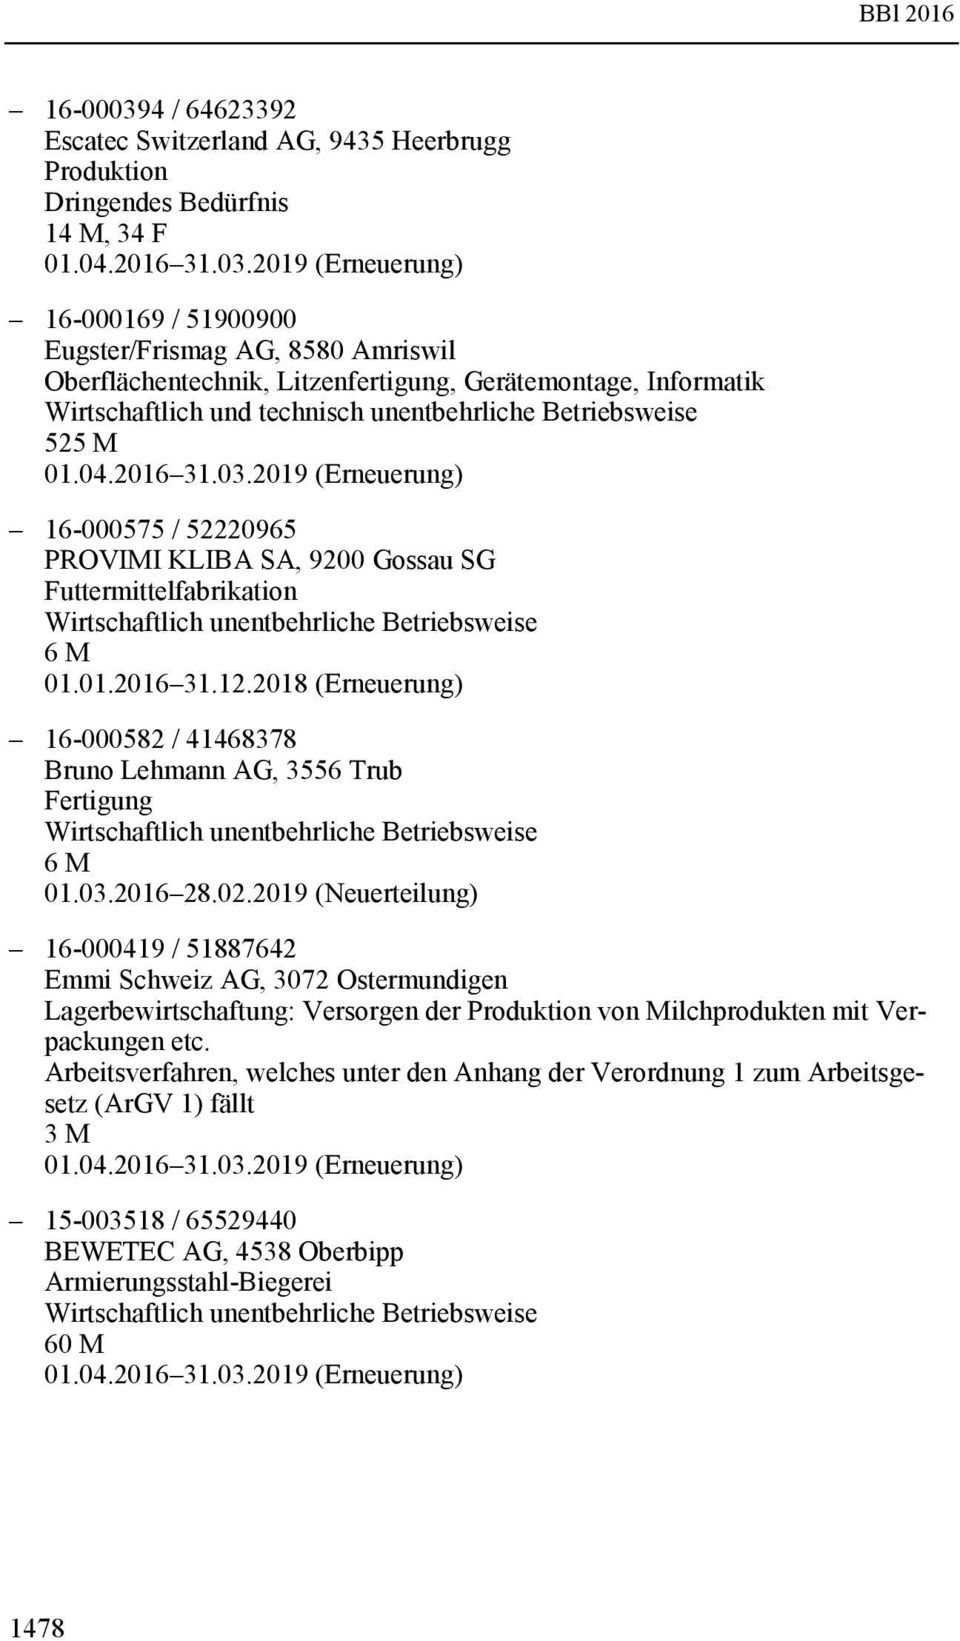 2018 (Erneuerung) 16-000582 / 41468378 Bruno Lehmann AG, 3556 Trub Fertigung 6 M 01.03.2016 28.02.